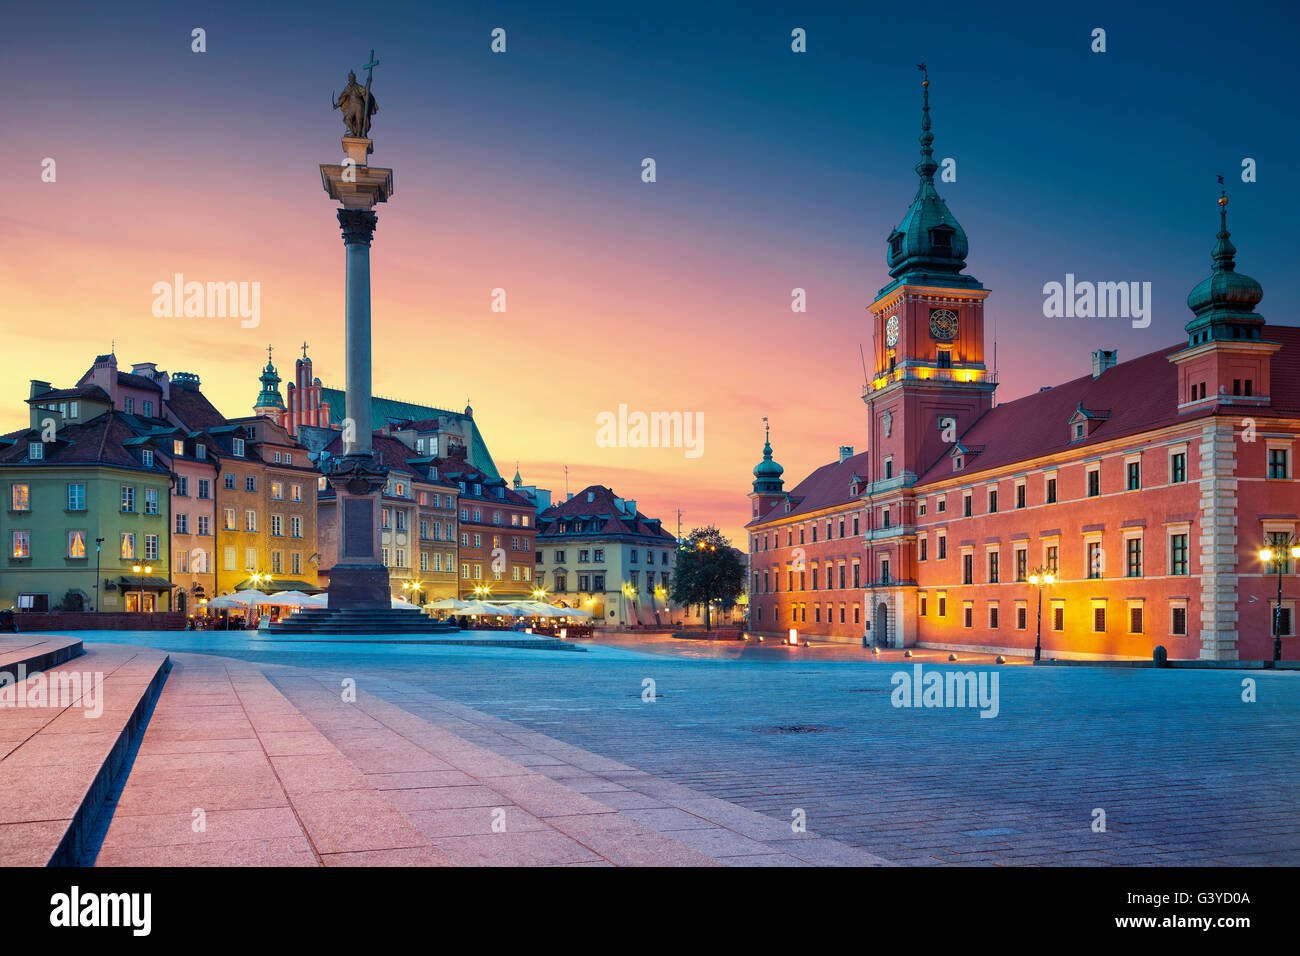 Varsavia. Immagine della città vecchia Varsavia, Polonia durante il tramonto. Foto Stock